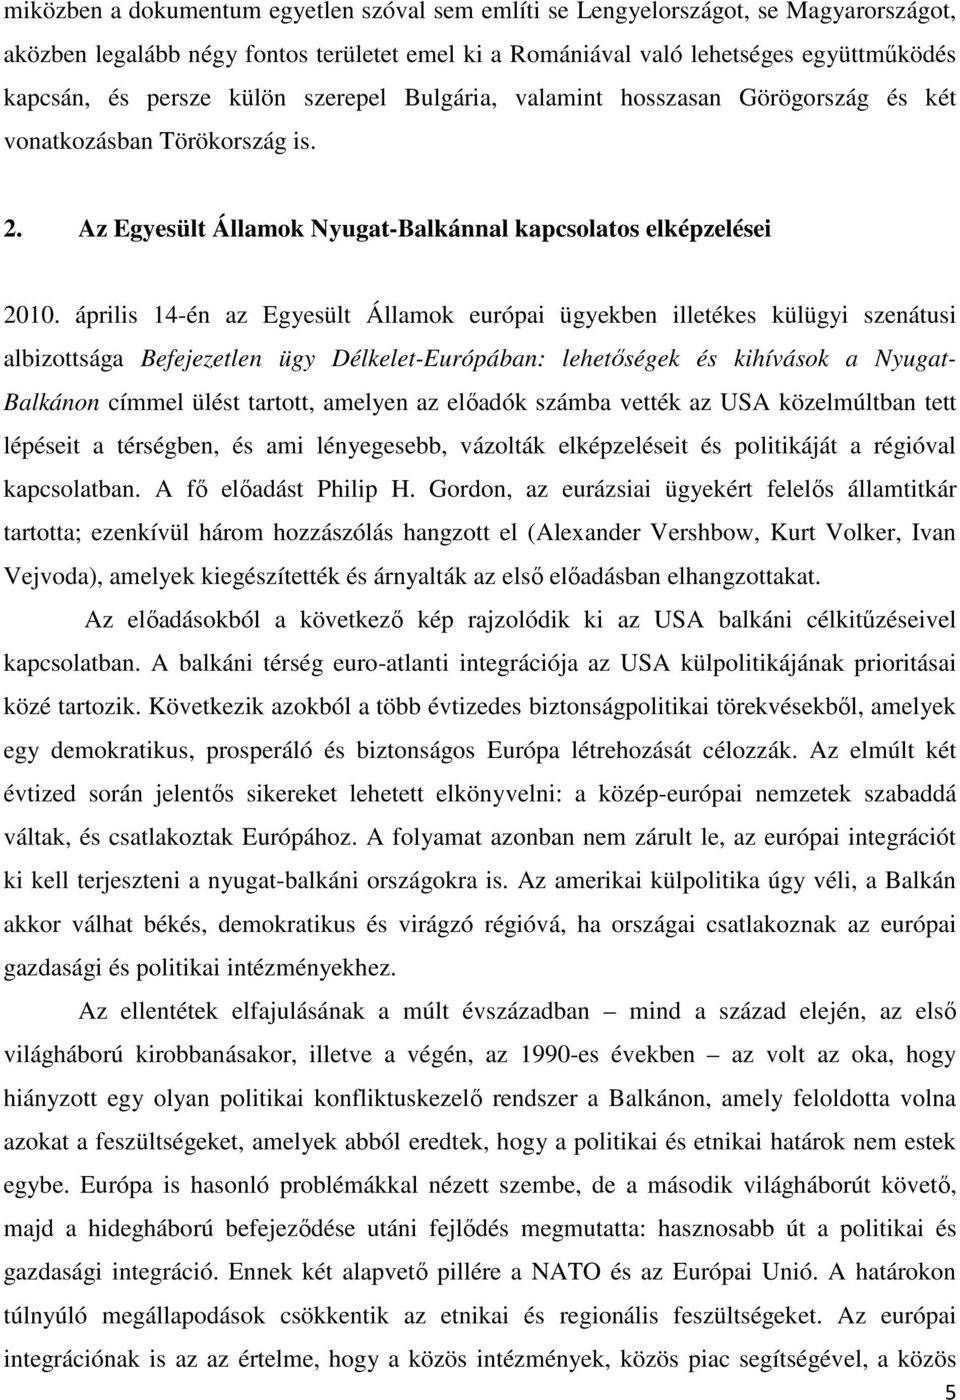 április 14-én az Egyesült Államok európai ügyekben illetékes külügyi szenátusi albizottsága Befejezetlen ügy Délkelet-Európában: lehetıségek és kihívások a Nyugat- Balkánon címmel ülést tartott,